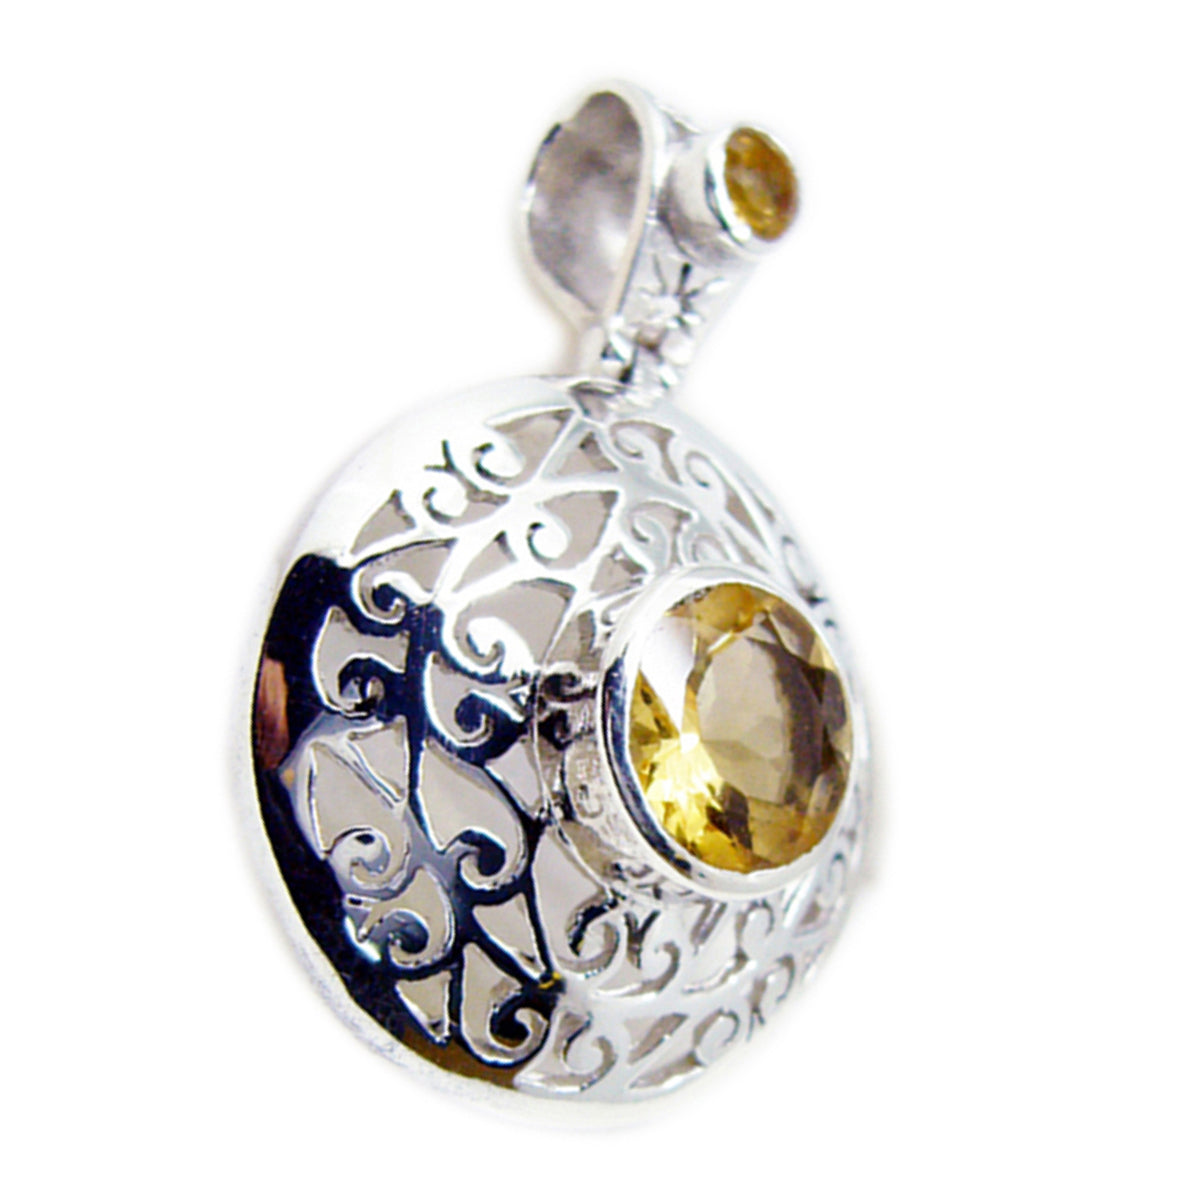 Colgante de plata maciza de citrino amarillo facetado redondo con gemas atractivas de riyo, regalo para boda